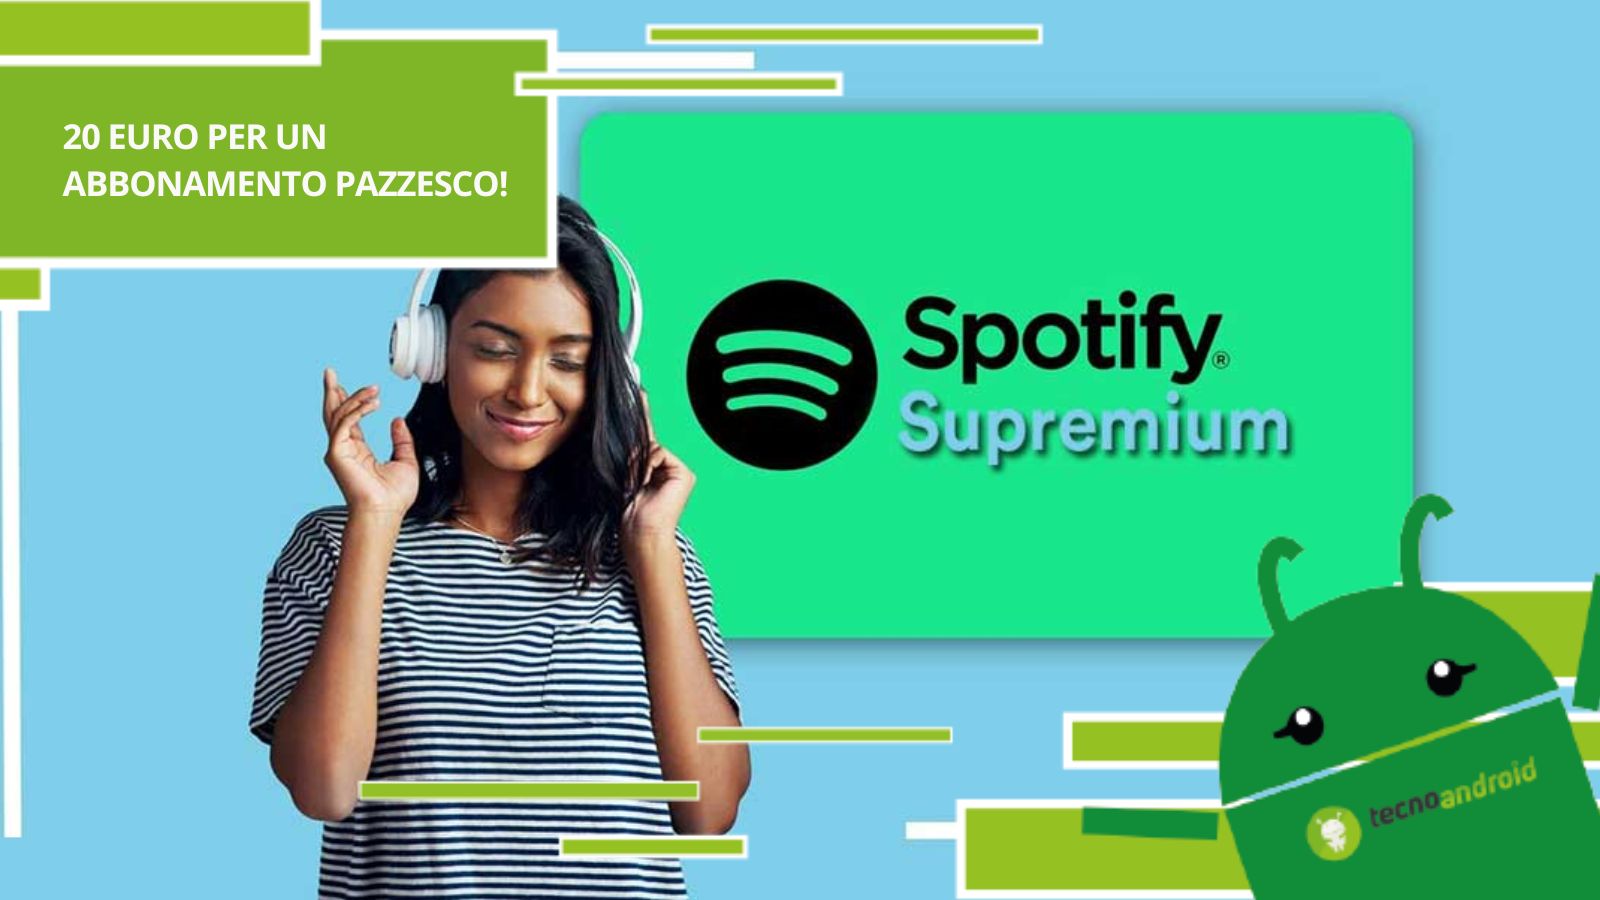 Spotify Supremium, con 20 euro hai accesso ad una quantità esagerata di vantaggi